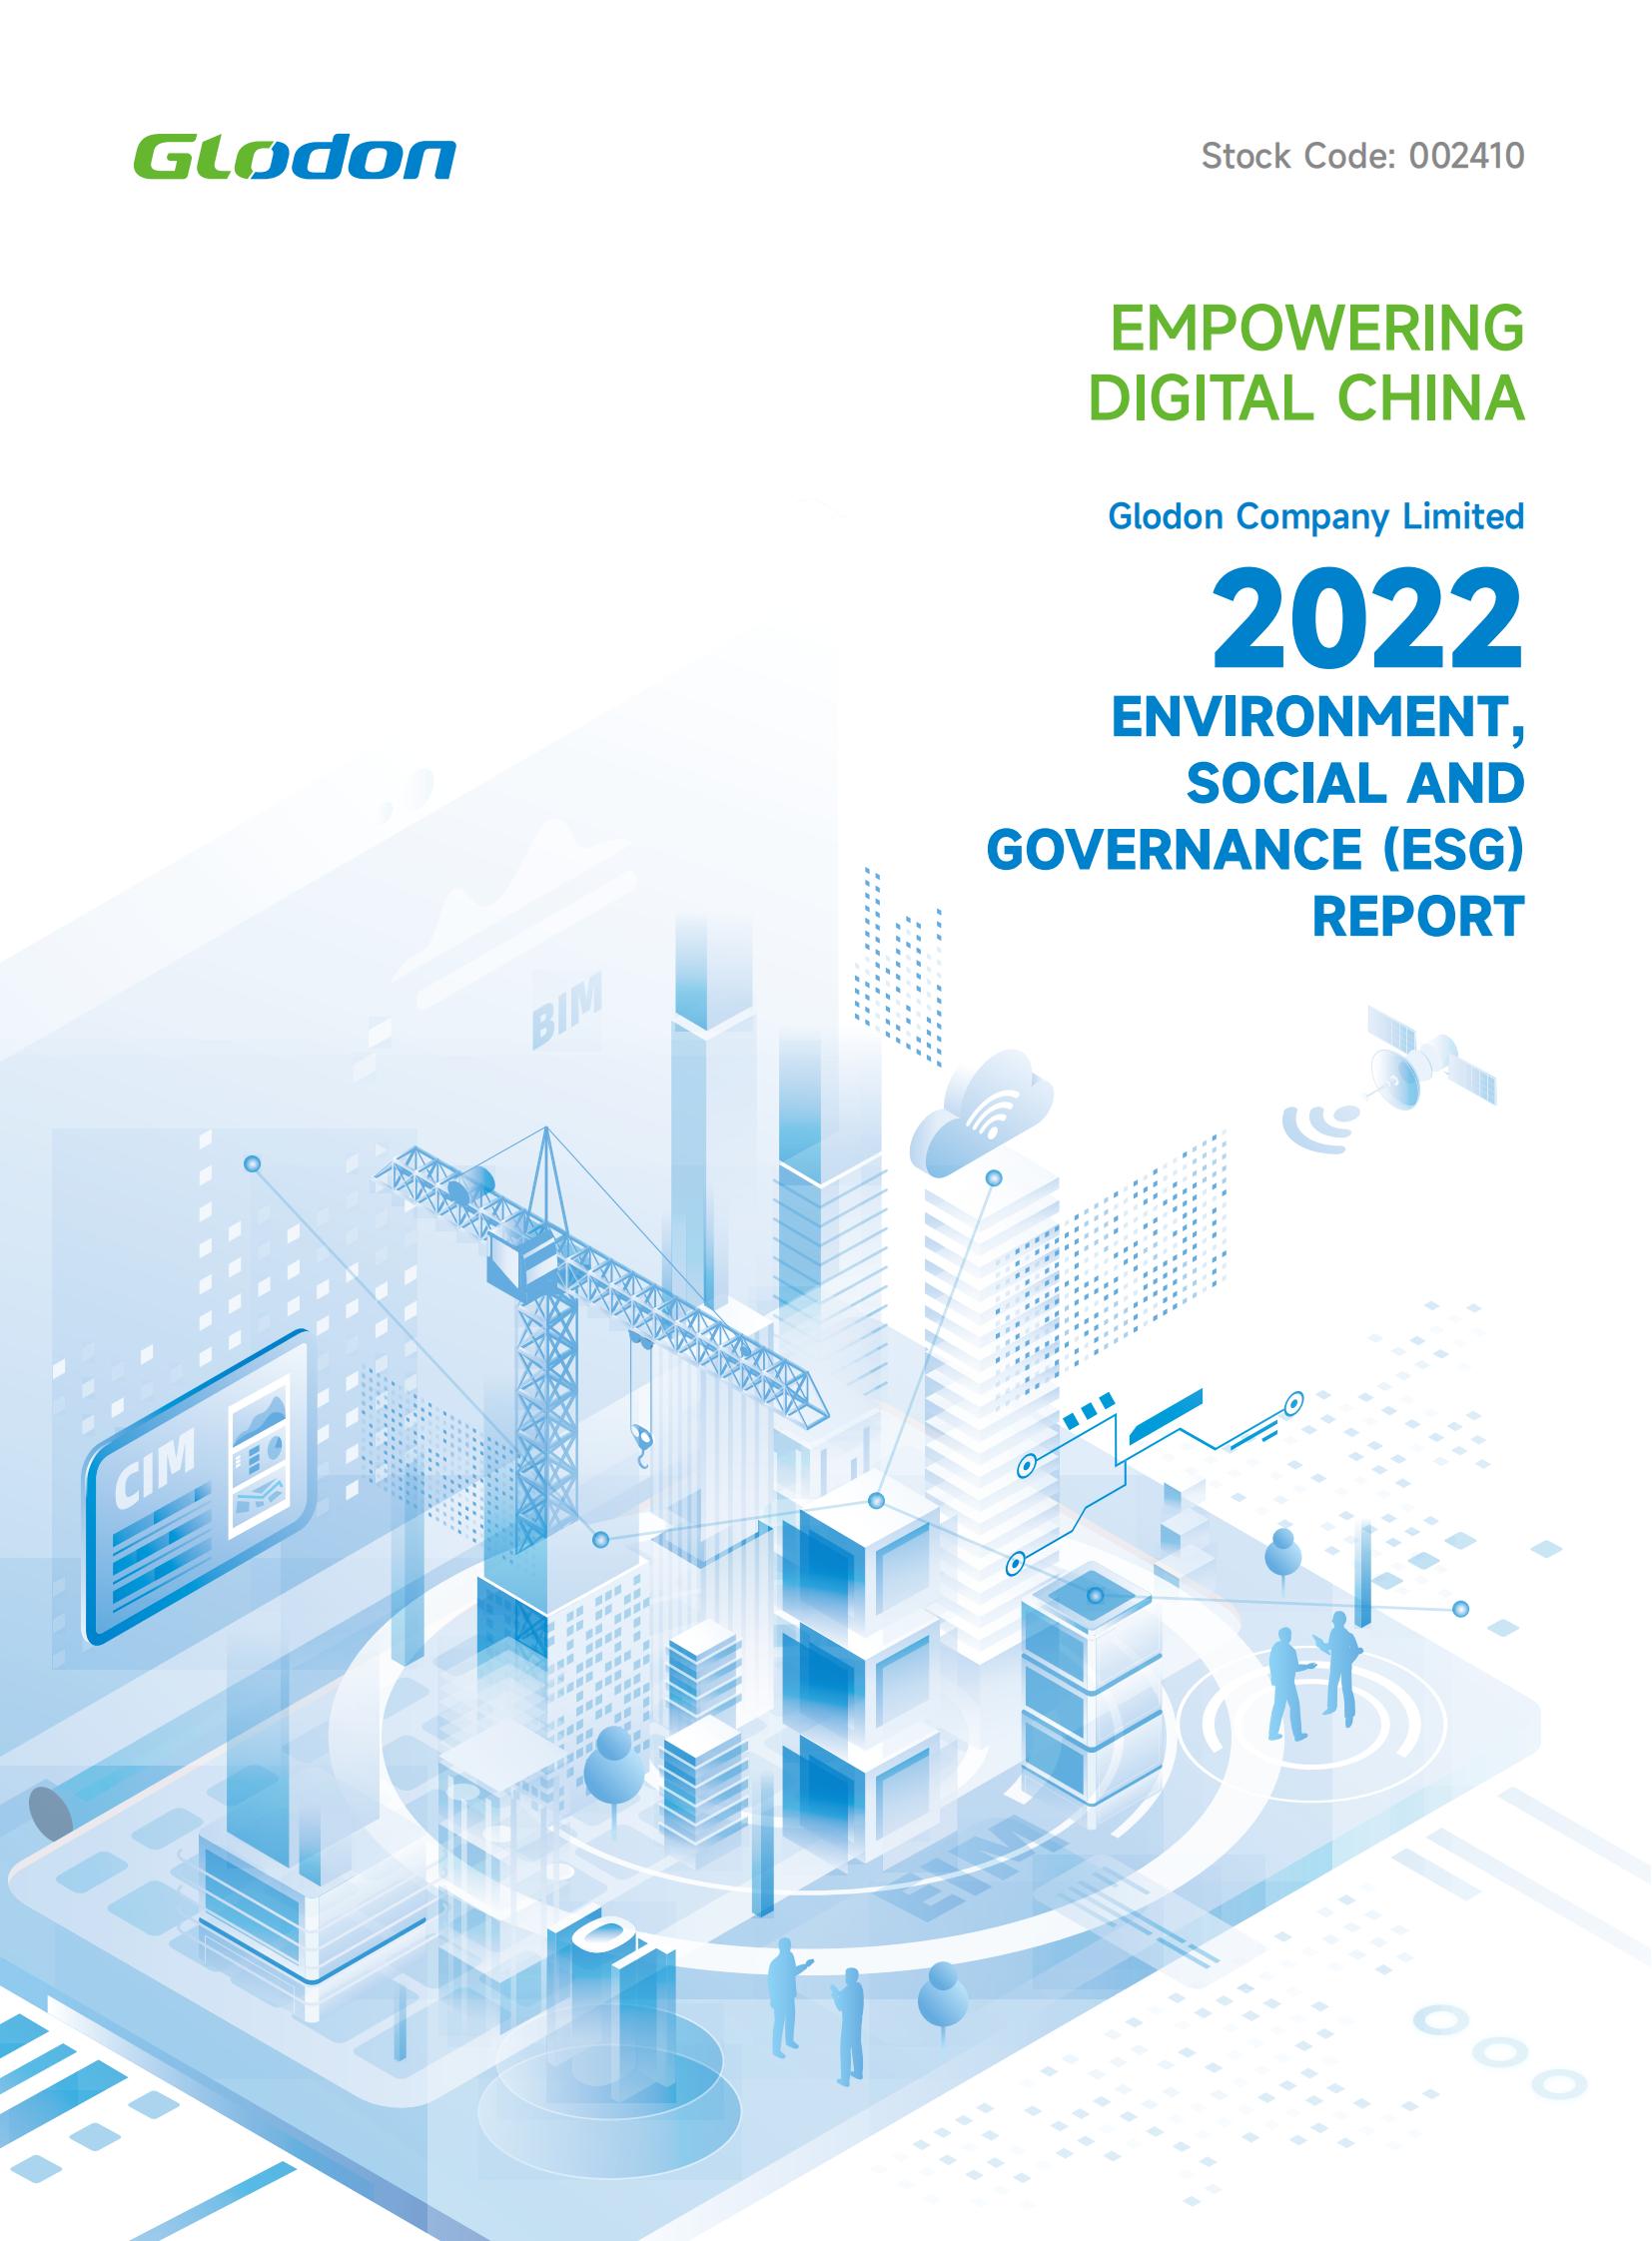 廣聯達科技股份有限公司2022年環境、社會及管治（ESG）報告-英文版